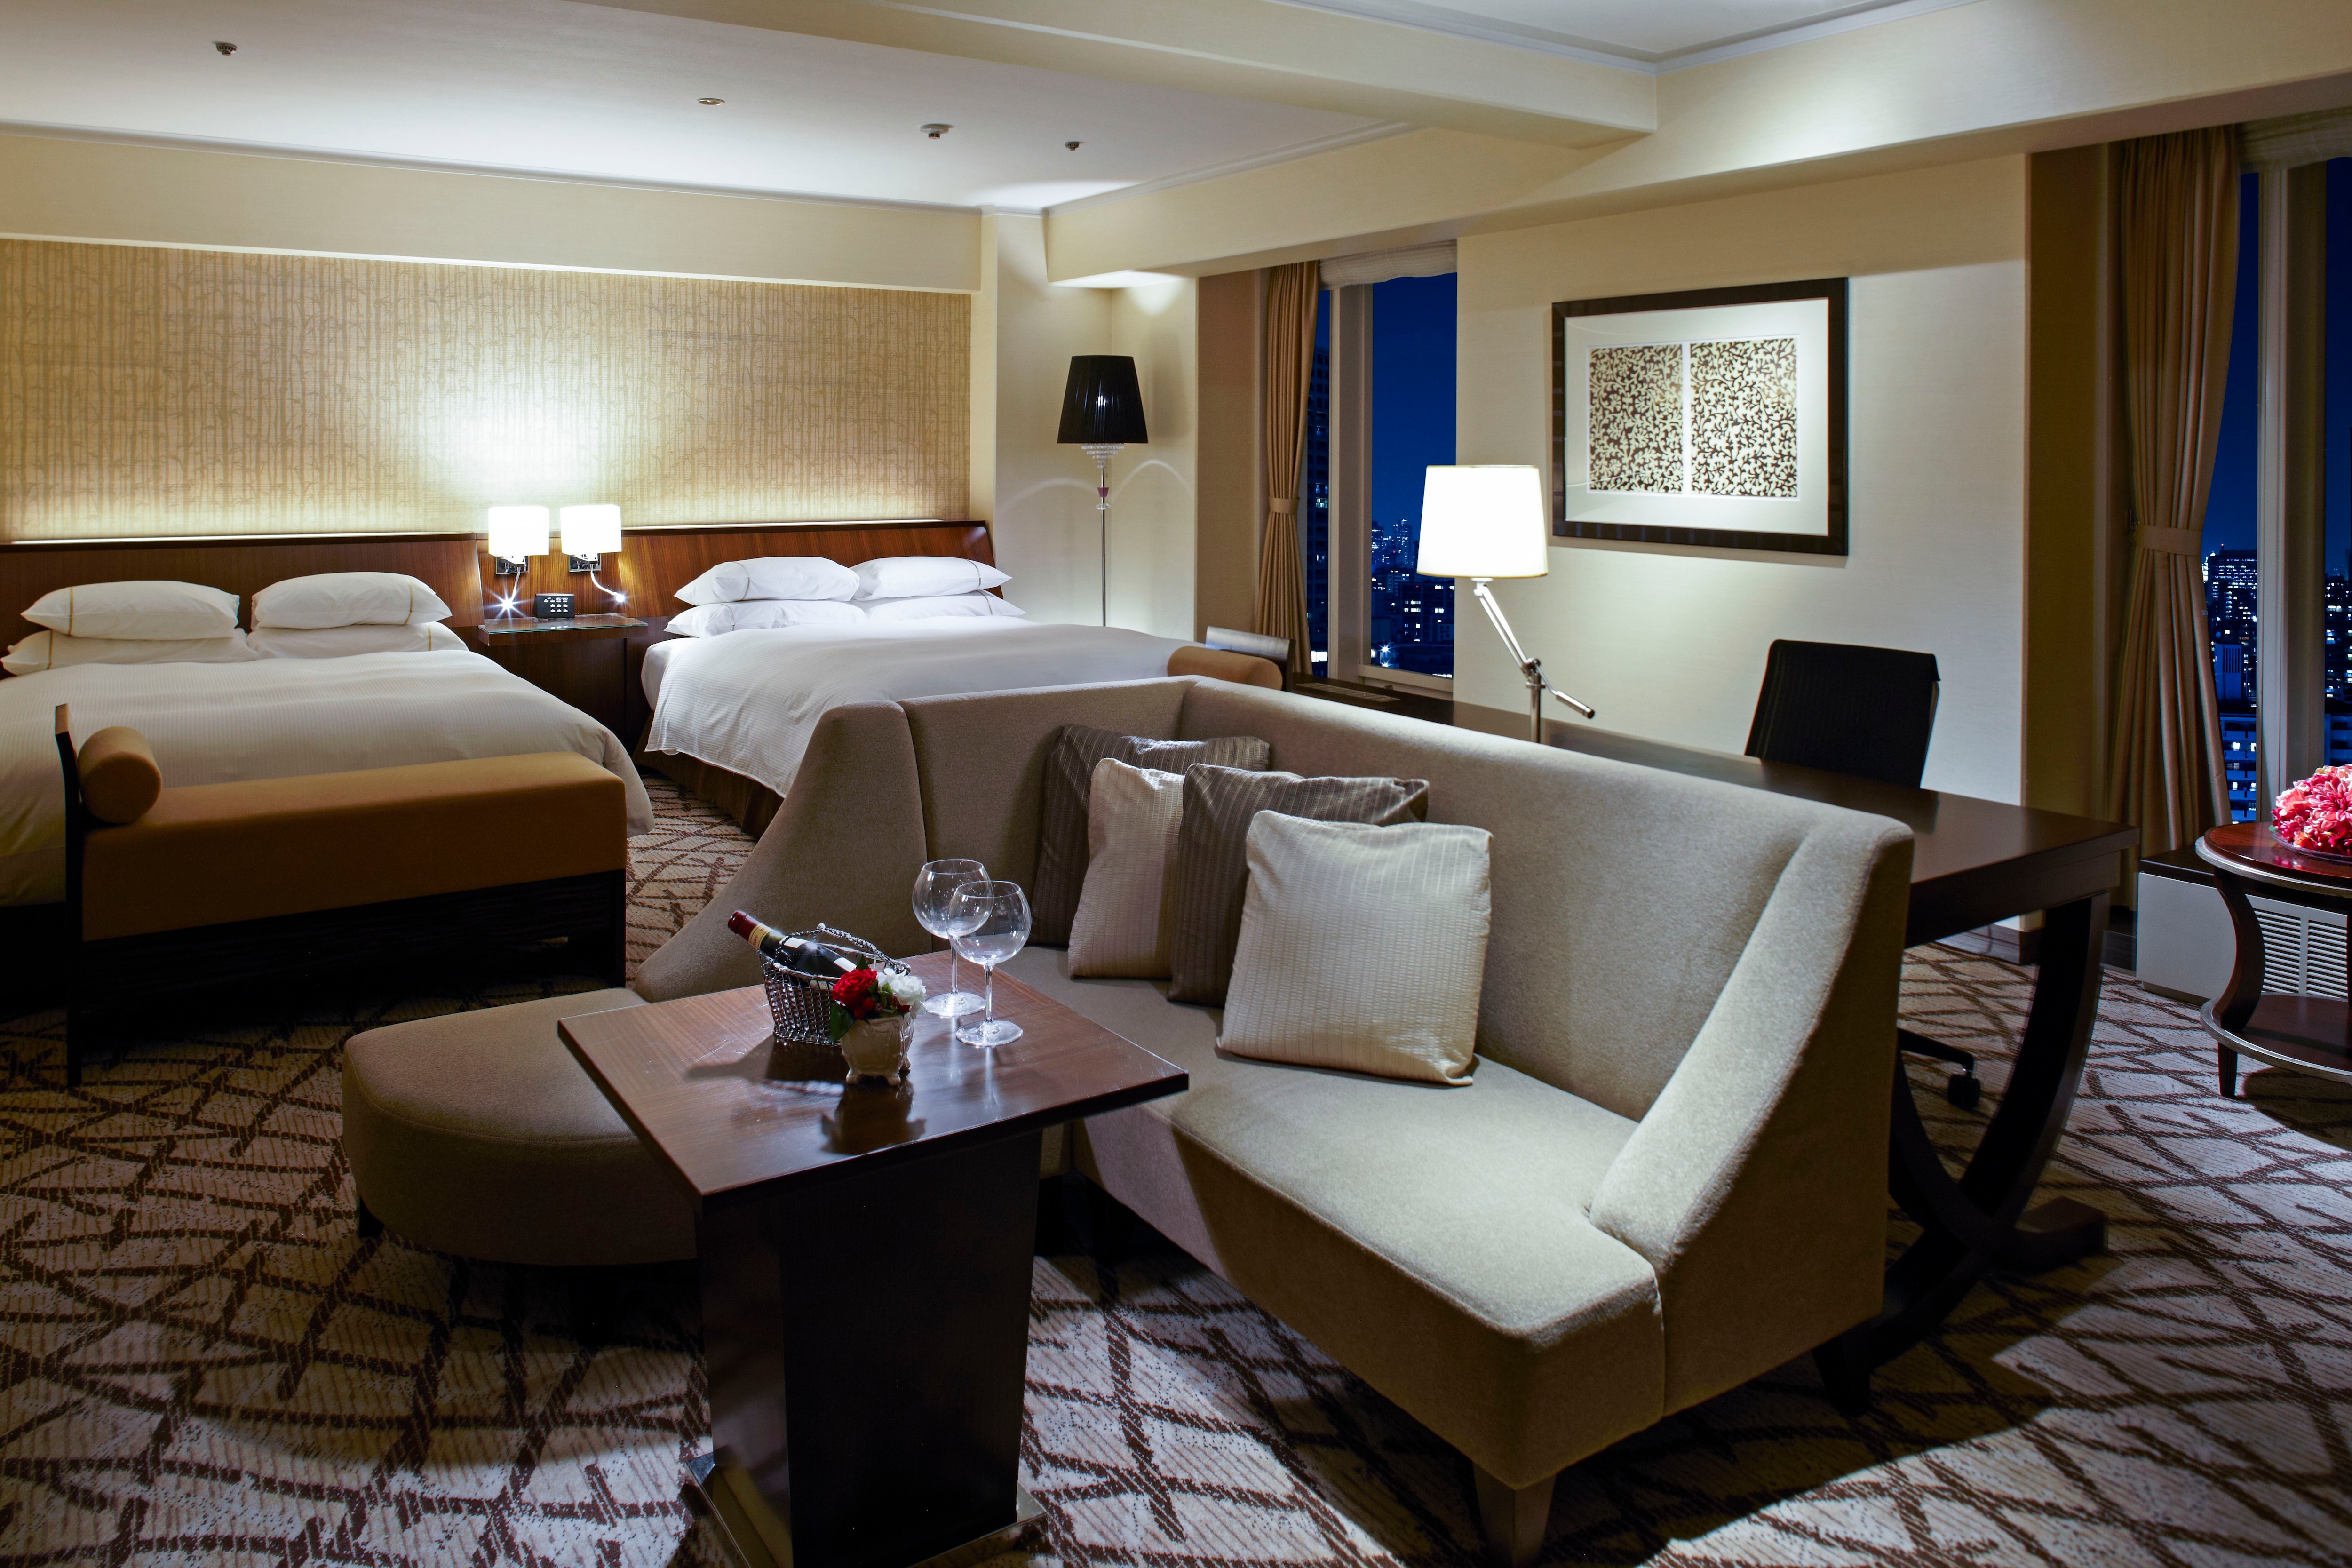 Premium Sheraton Suite Room (62㎡)